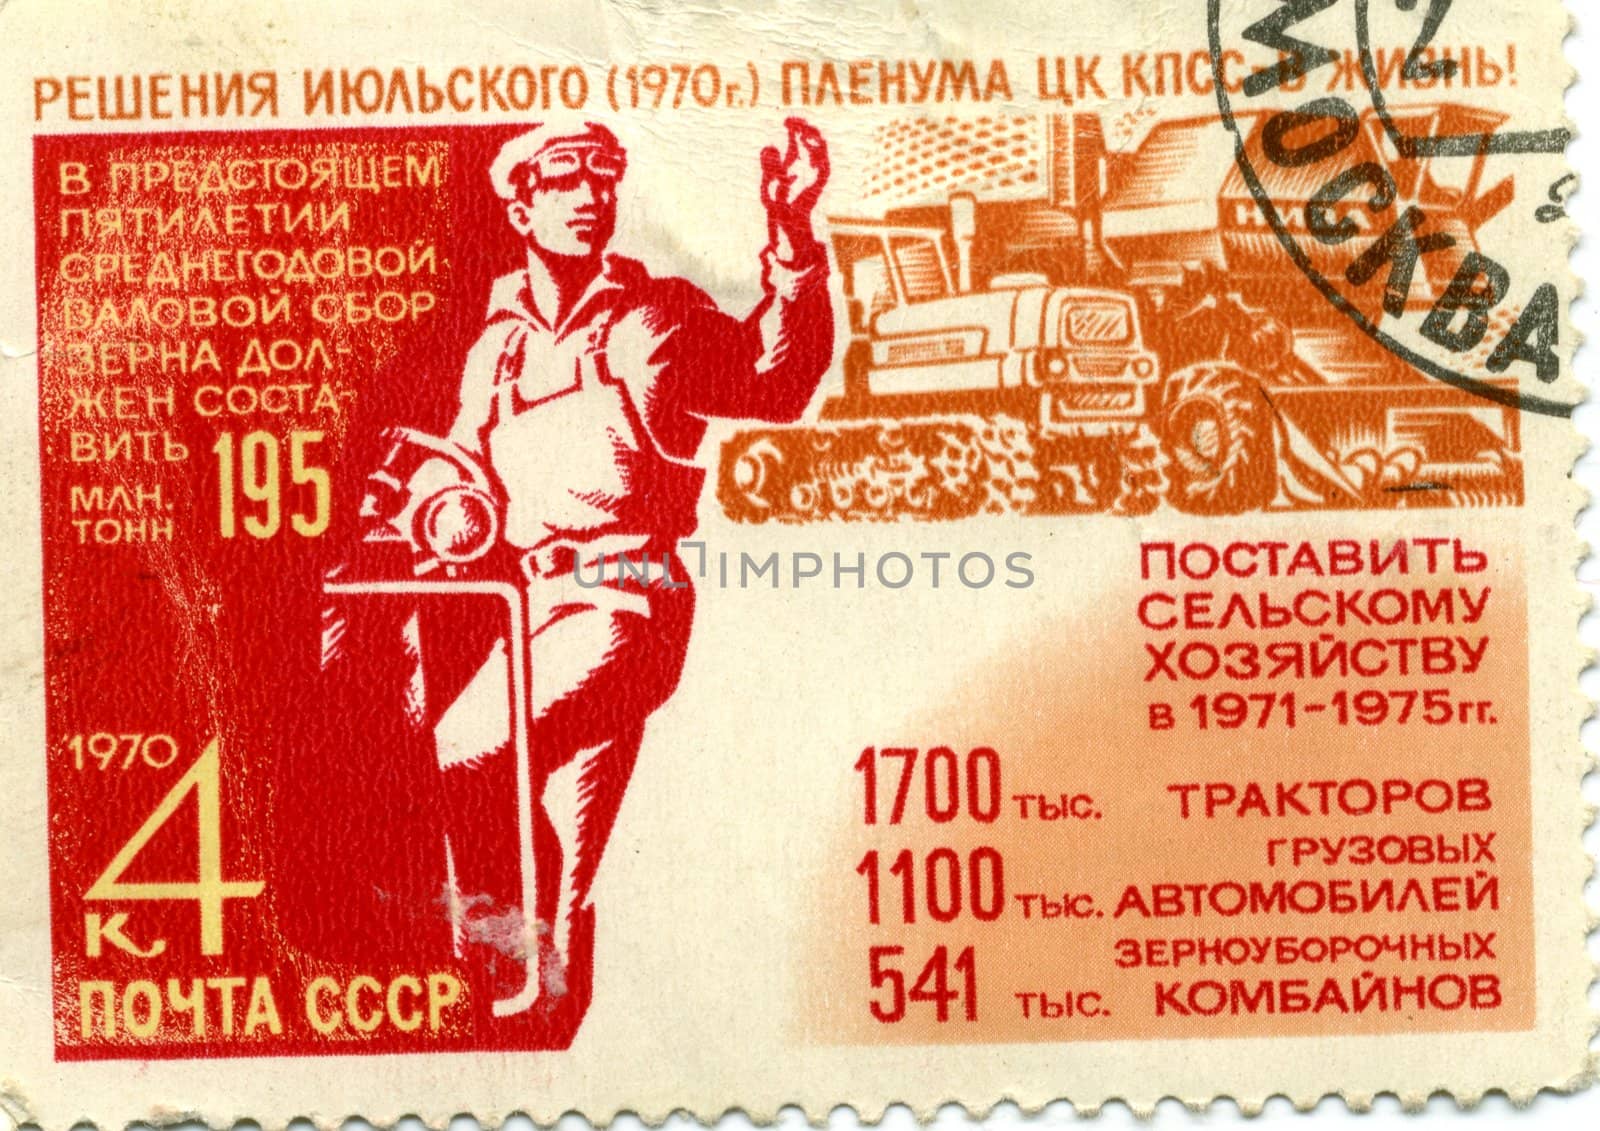 Old 1970 USSR stamp vintage